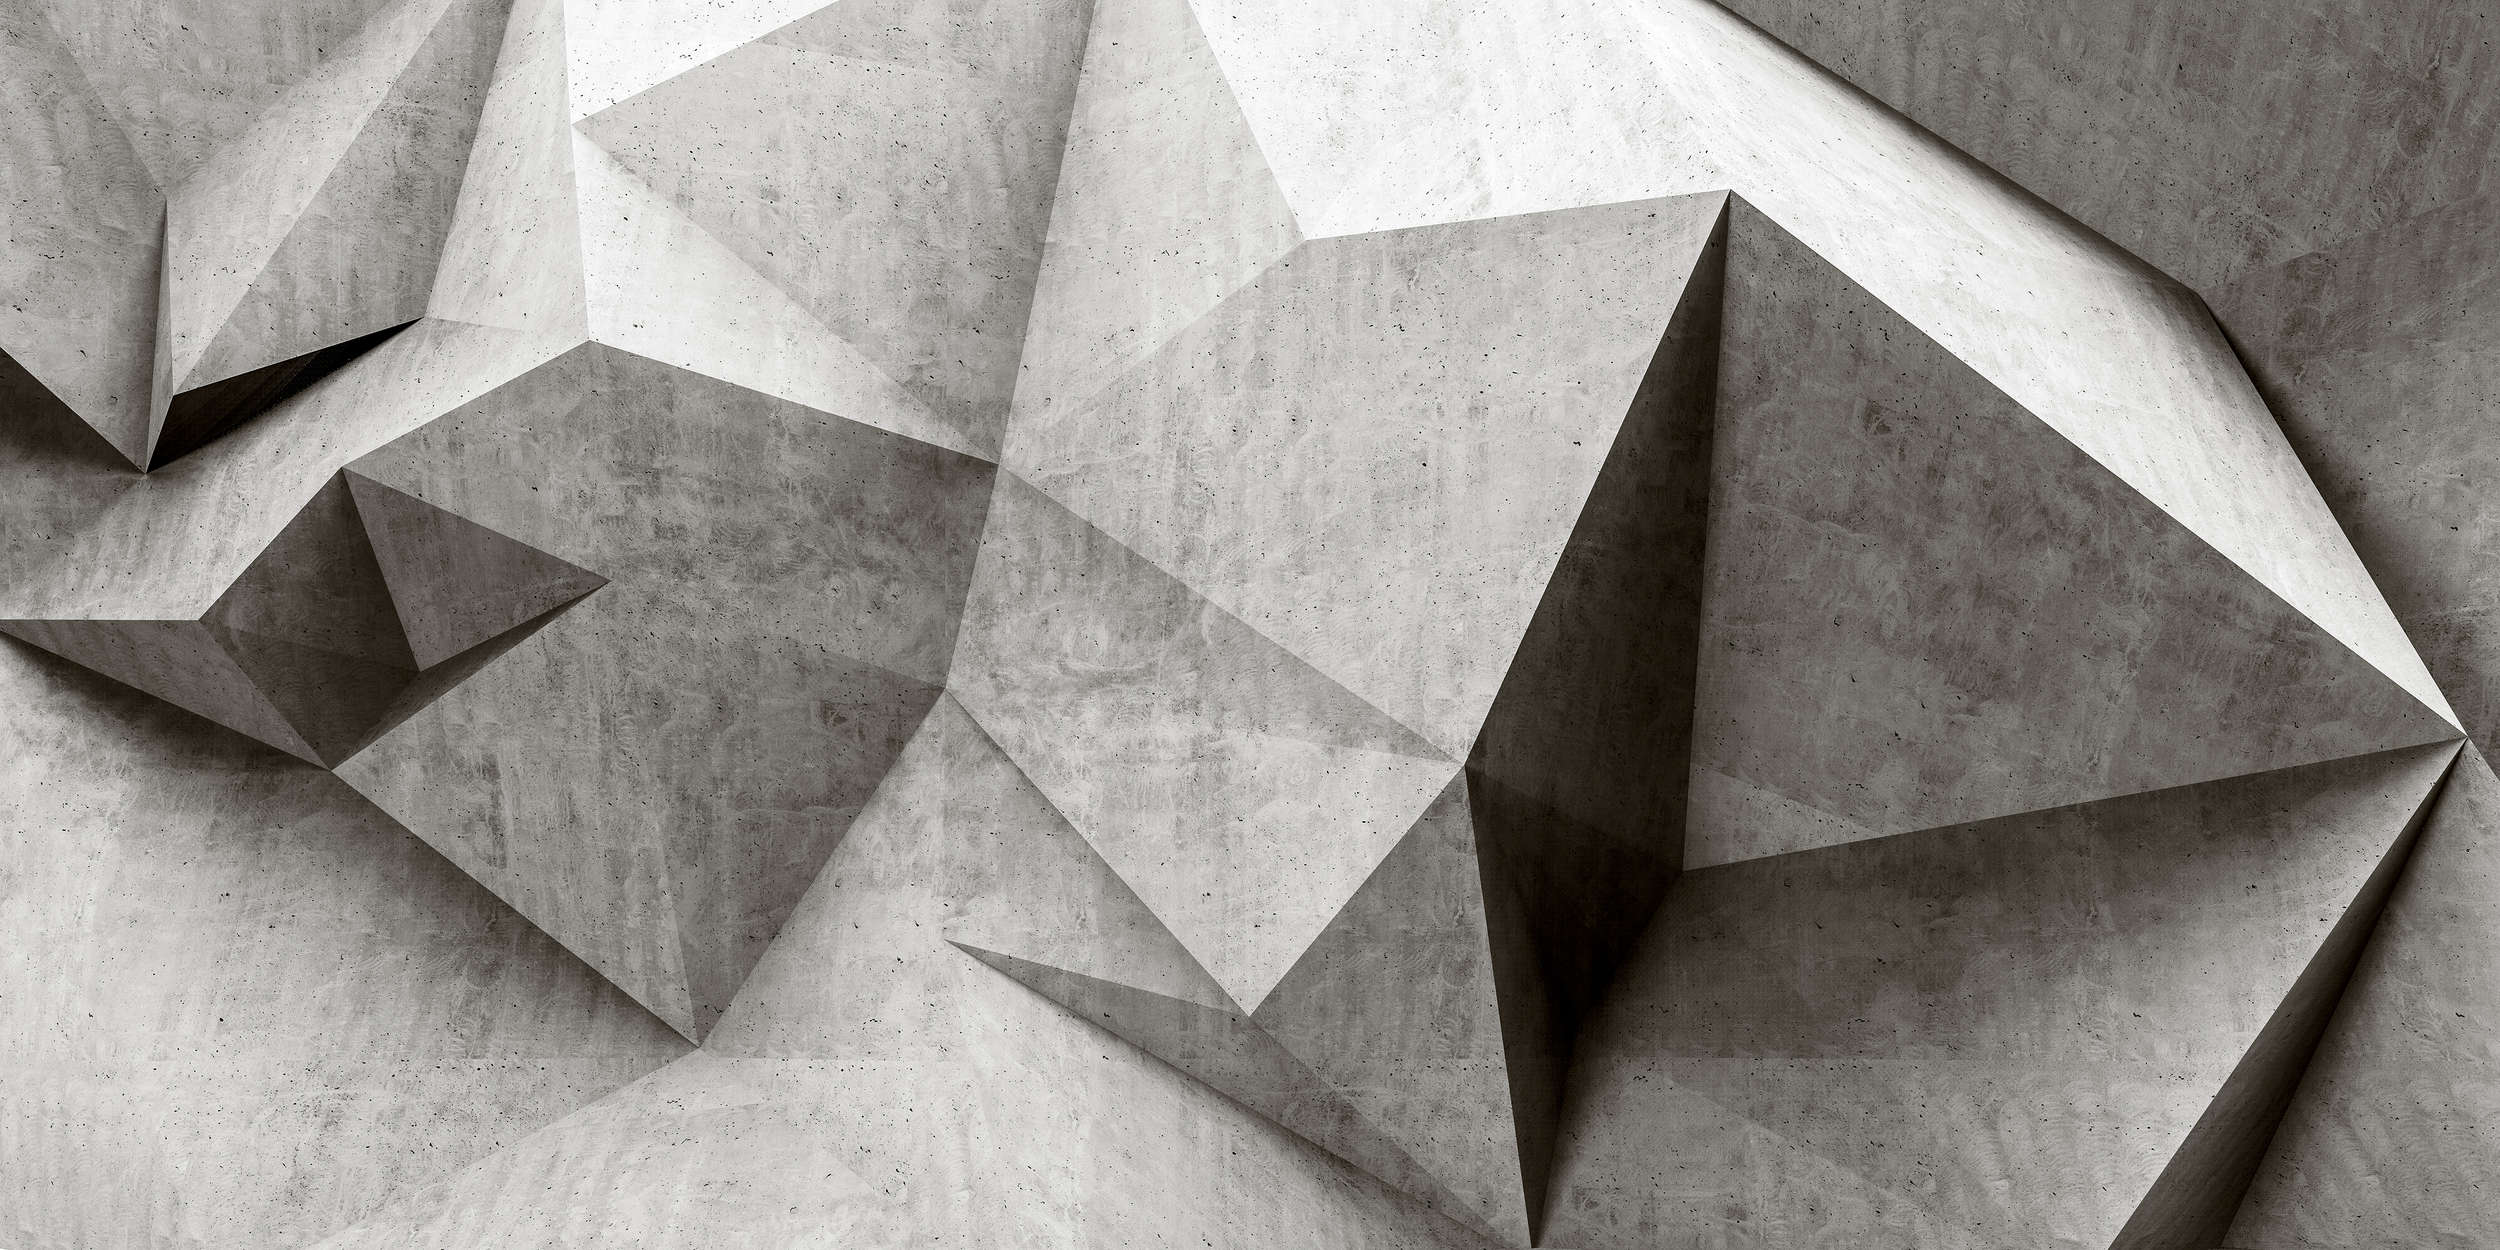             Boulder 1 - Papier peint 3D cool polygone de béton - gris, noir | texture intissé
        